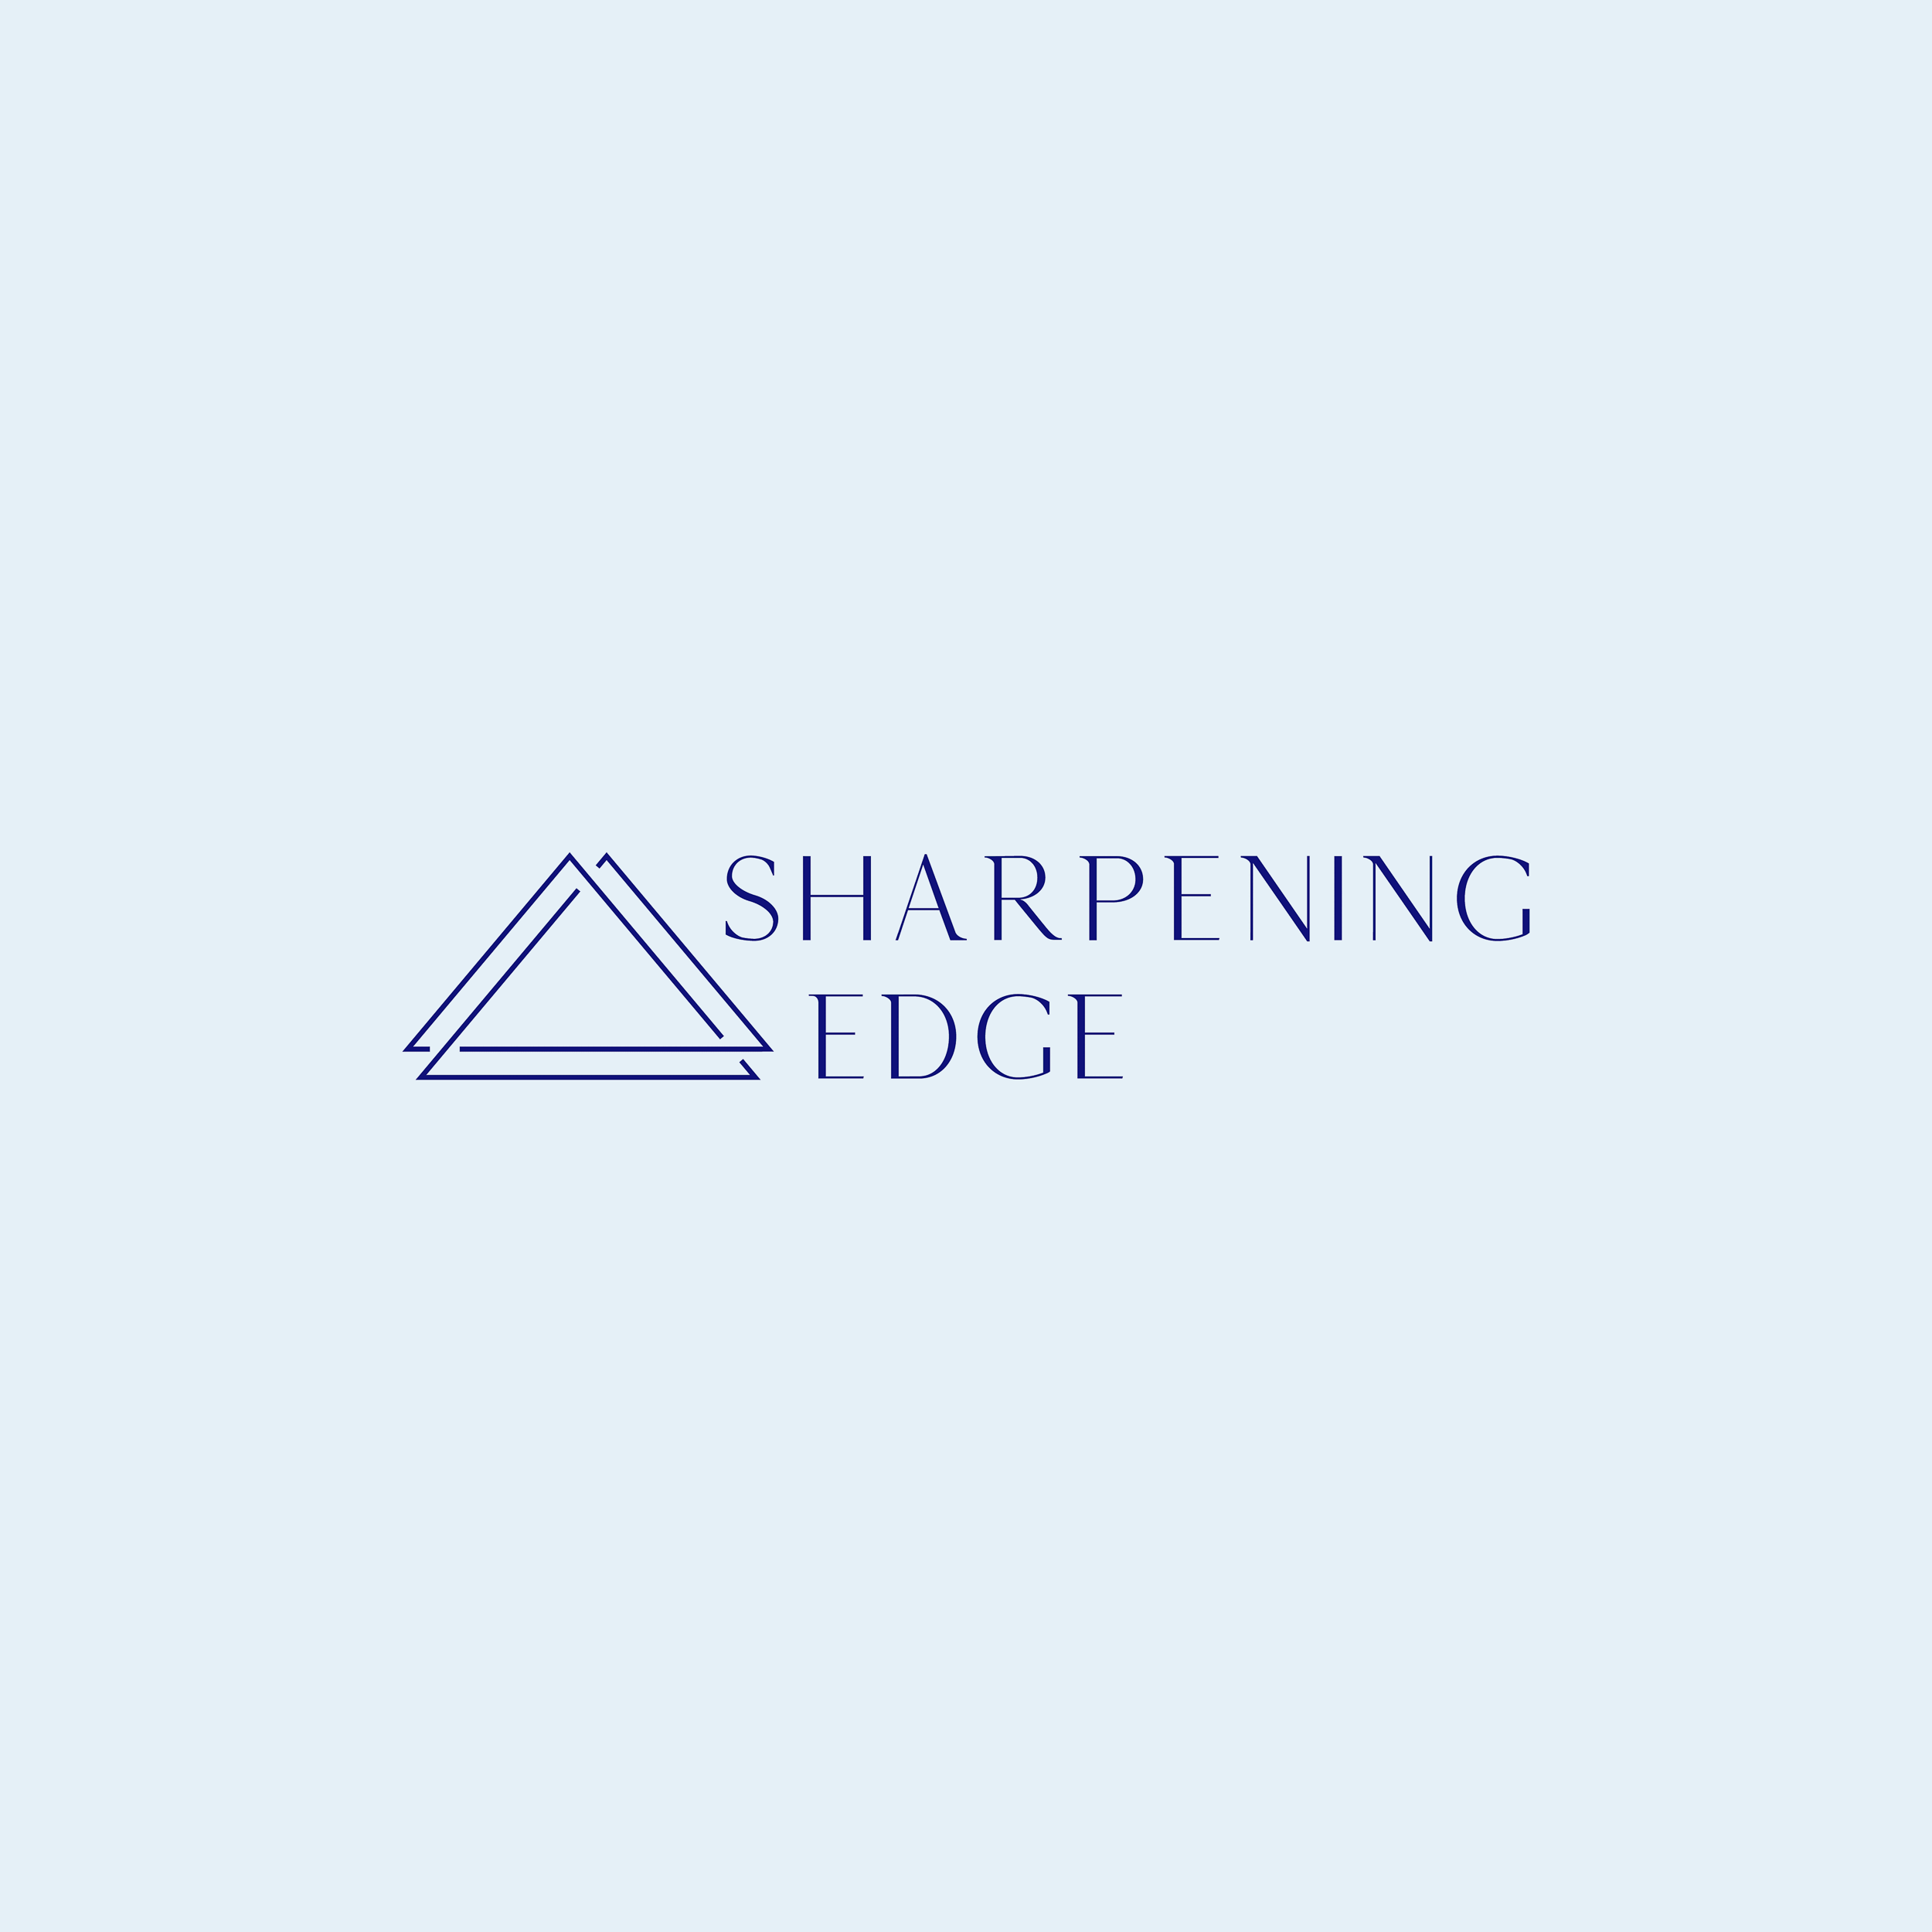 Das Logo von Sharpening Edge, das durch Kommunikationsdesign entstand